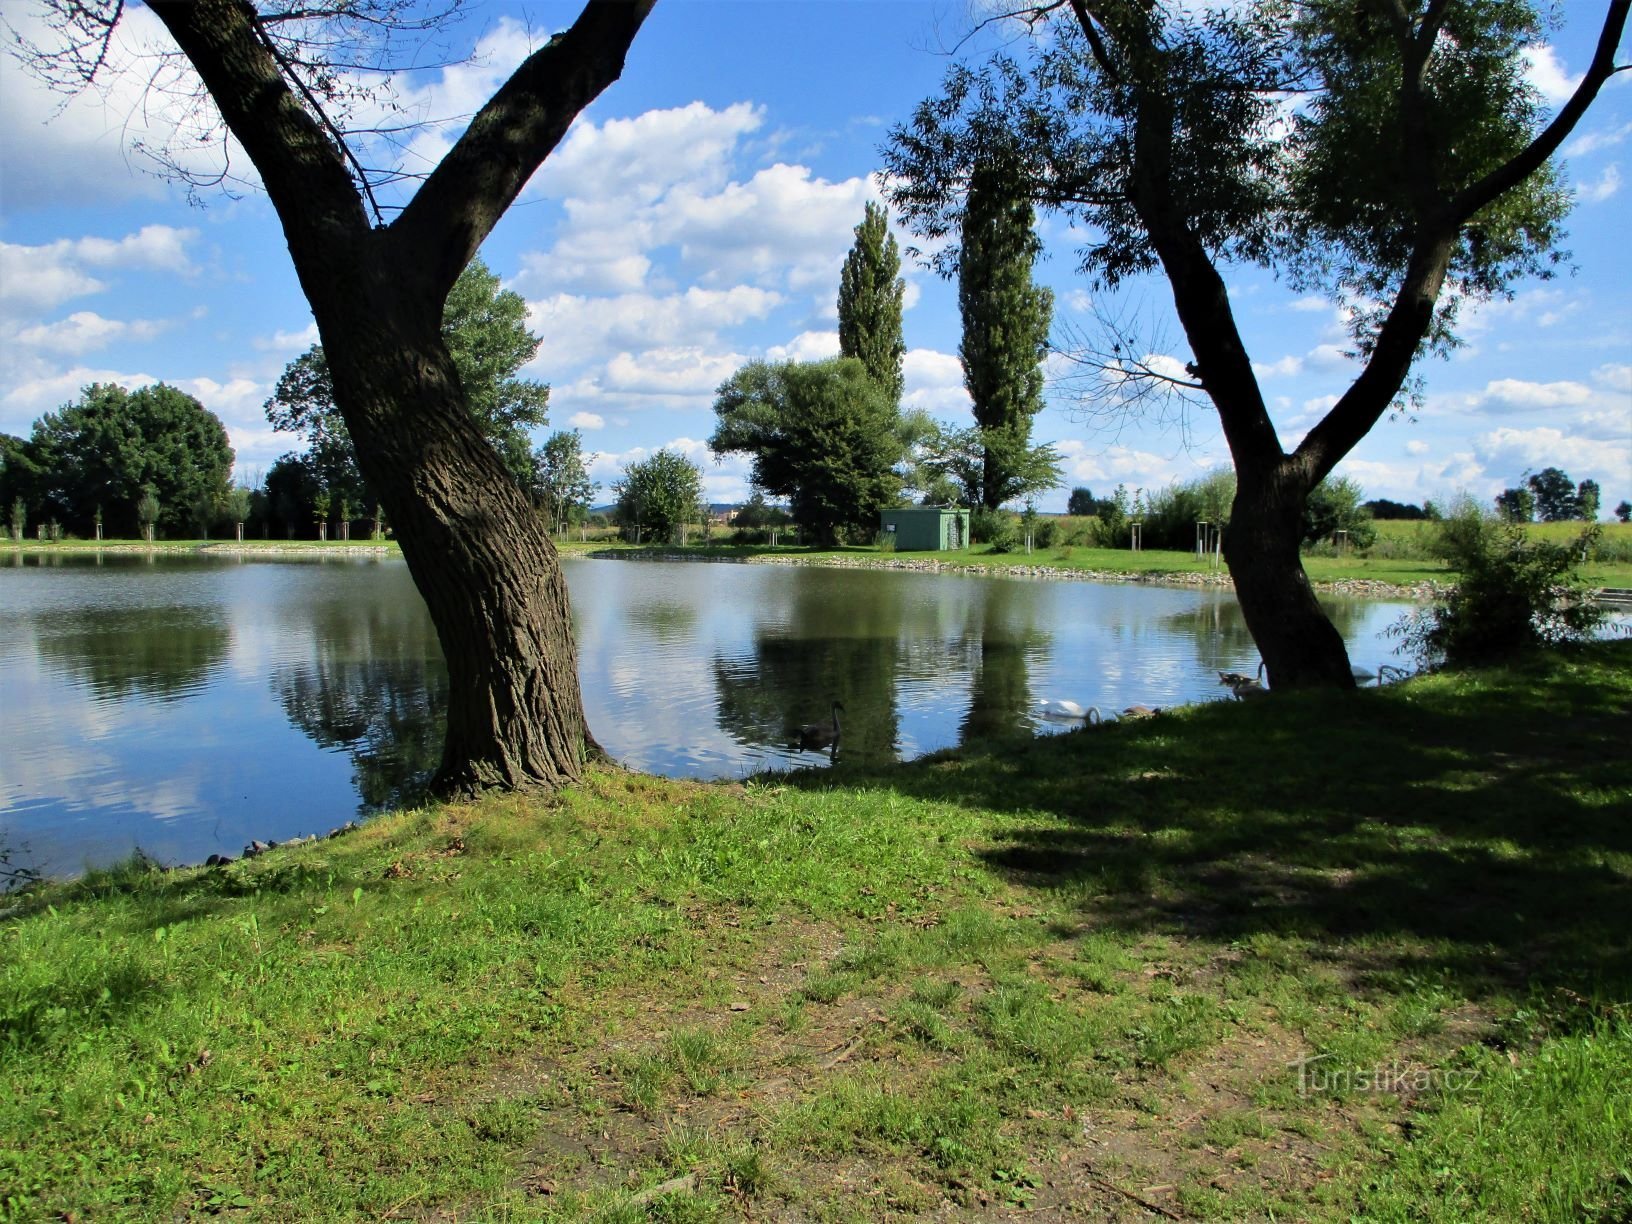 Vrškovský rybník (Libišany, 7.9.2020)